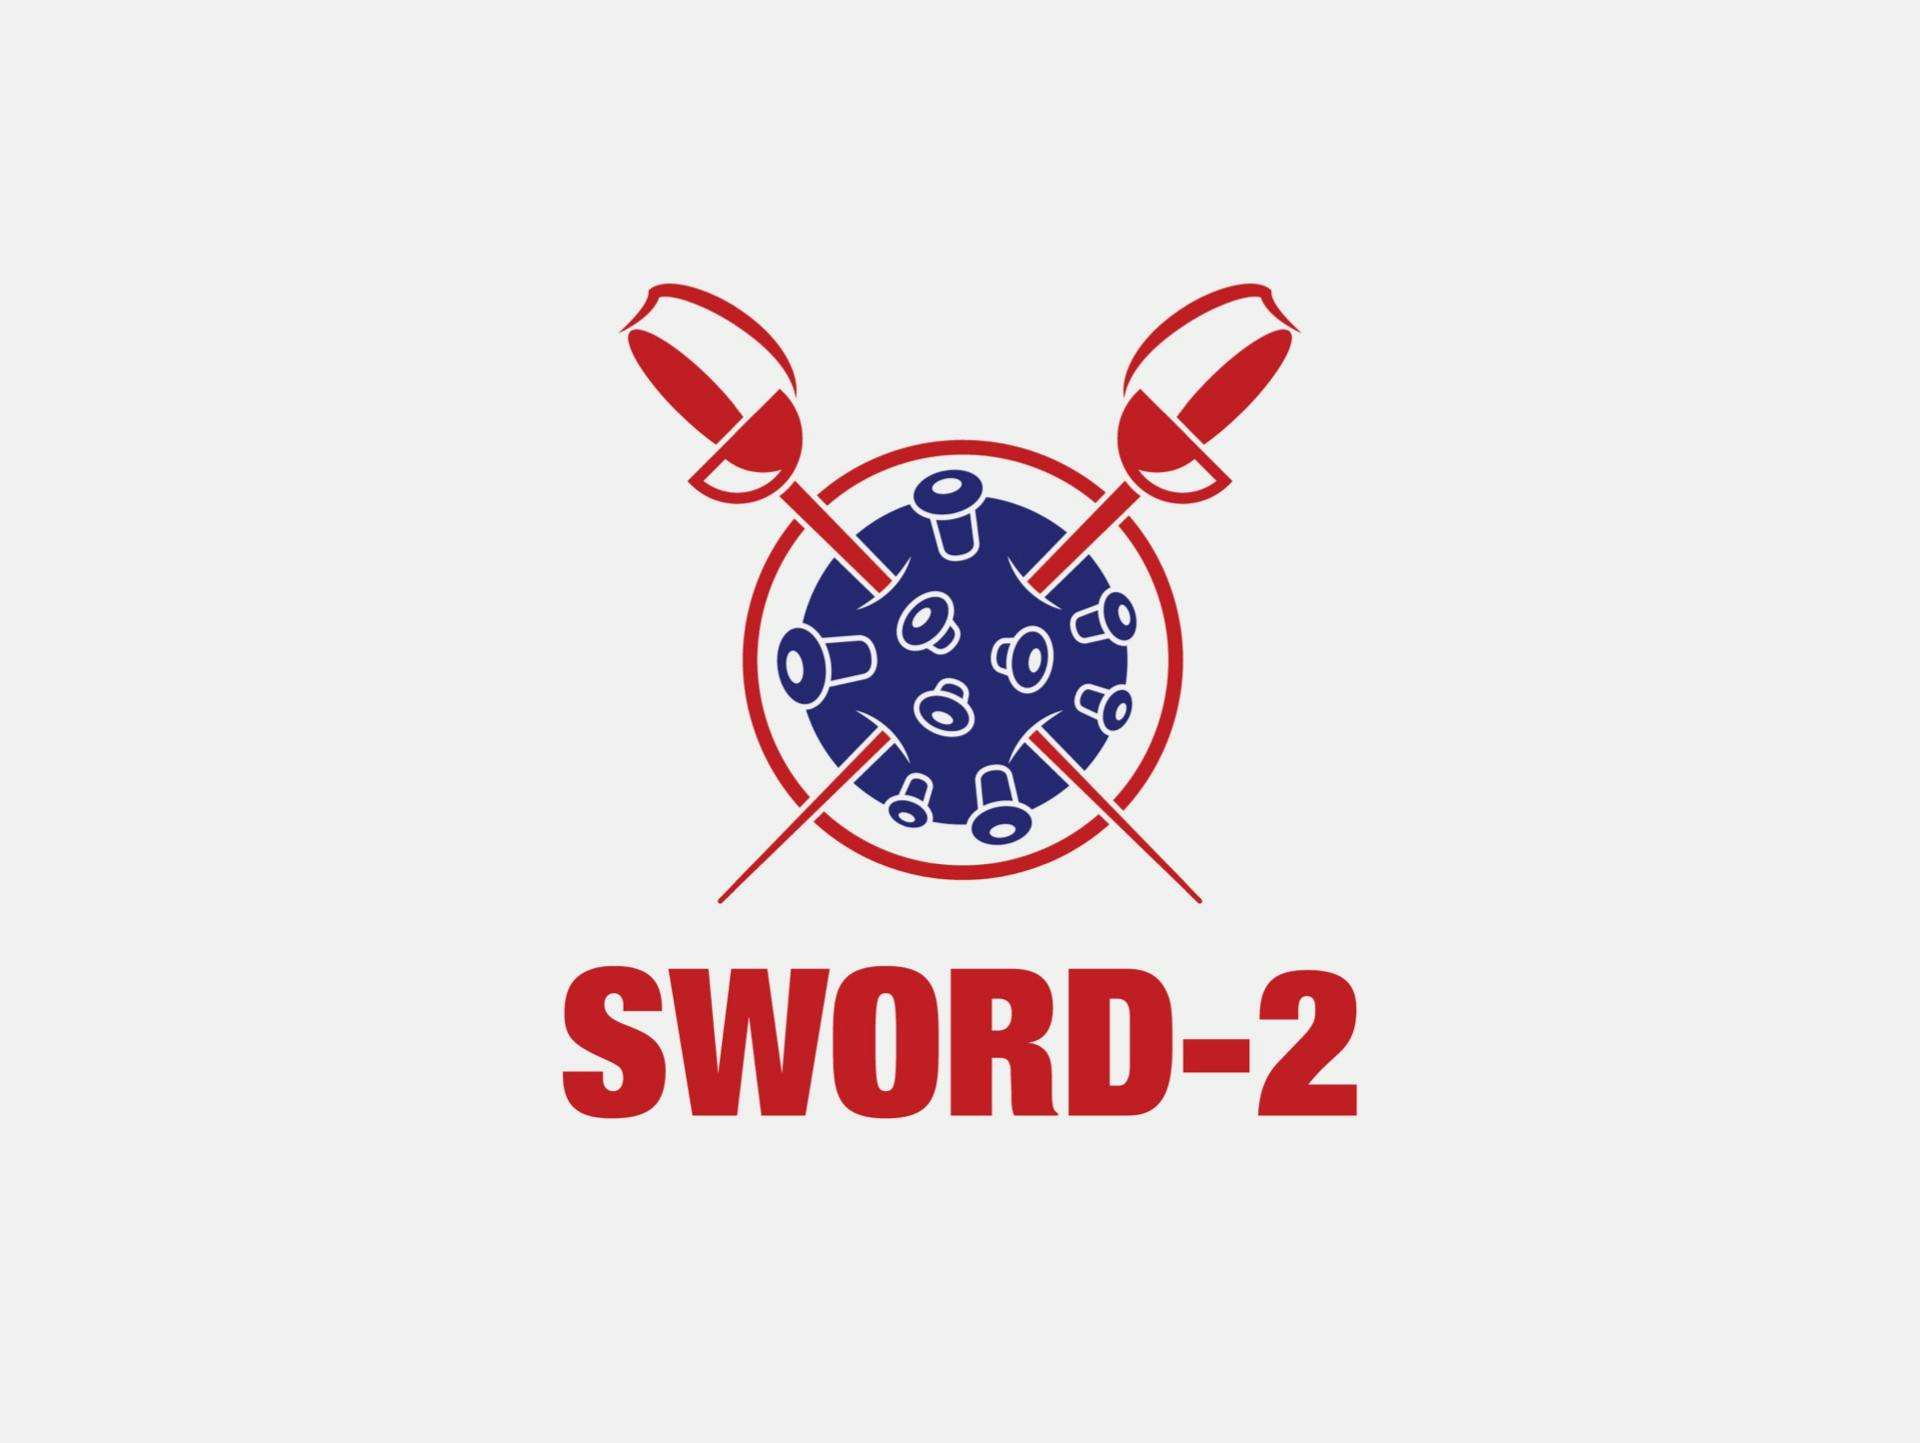 SWORD-2